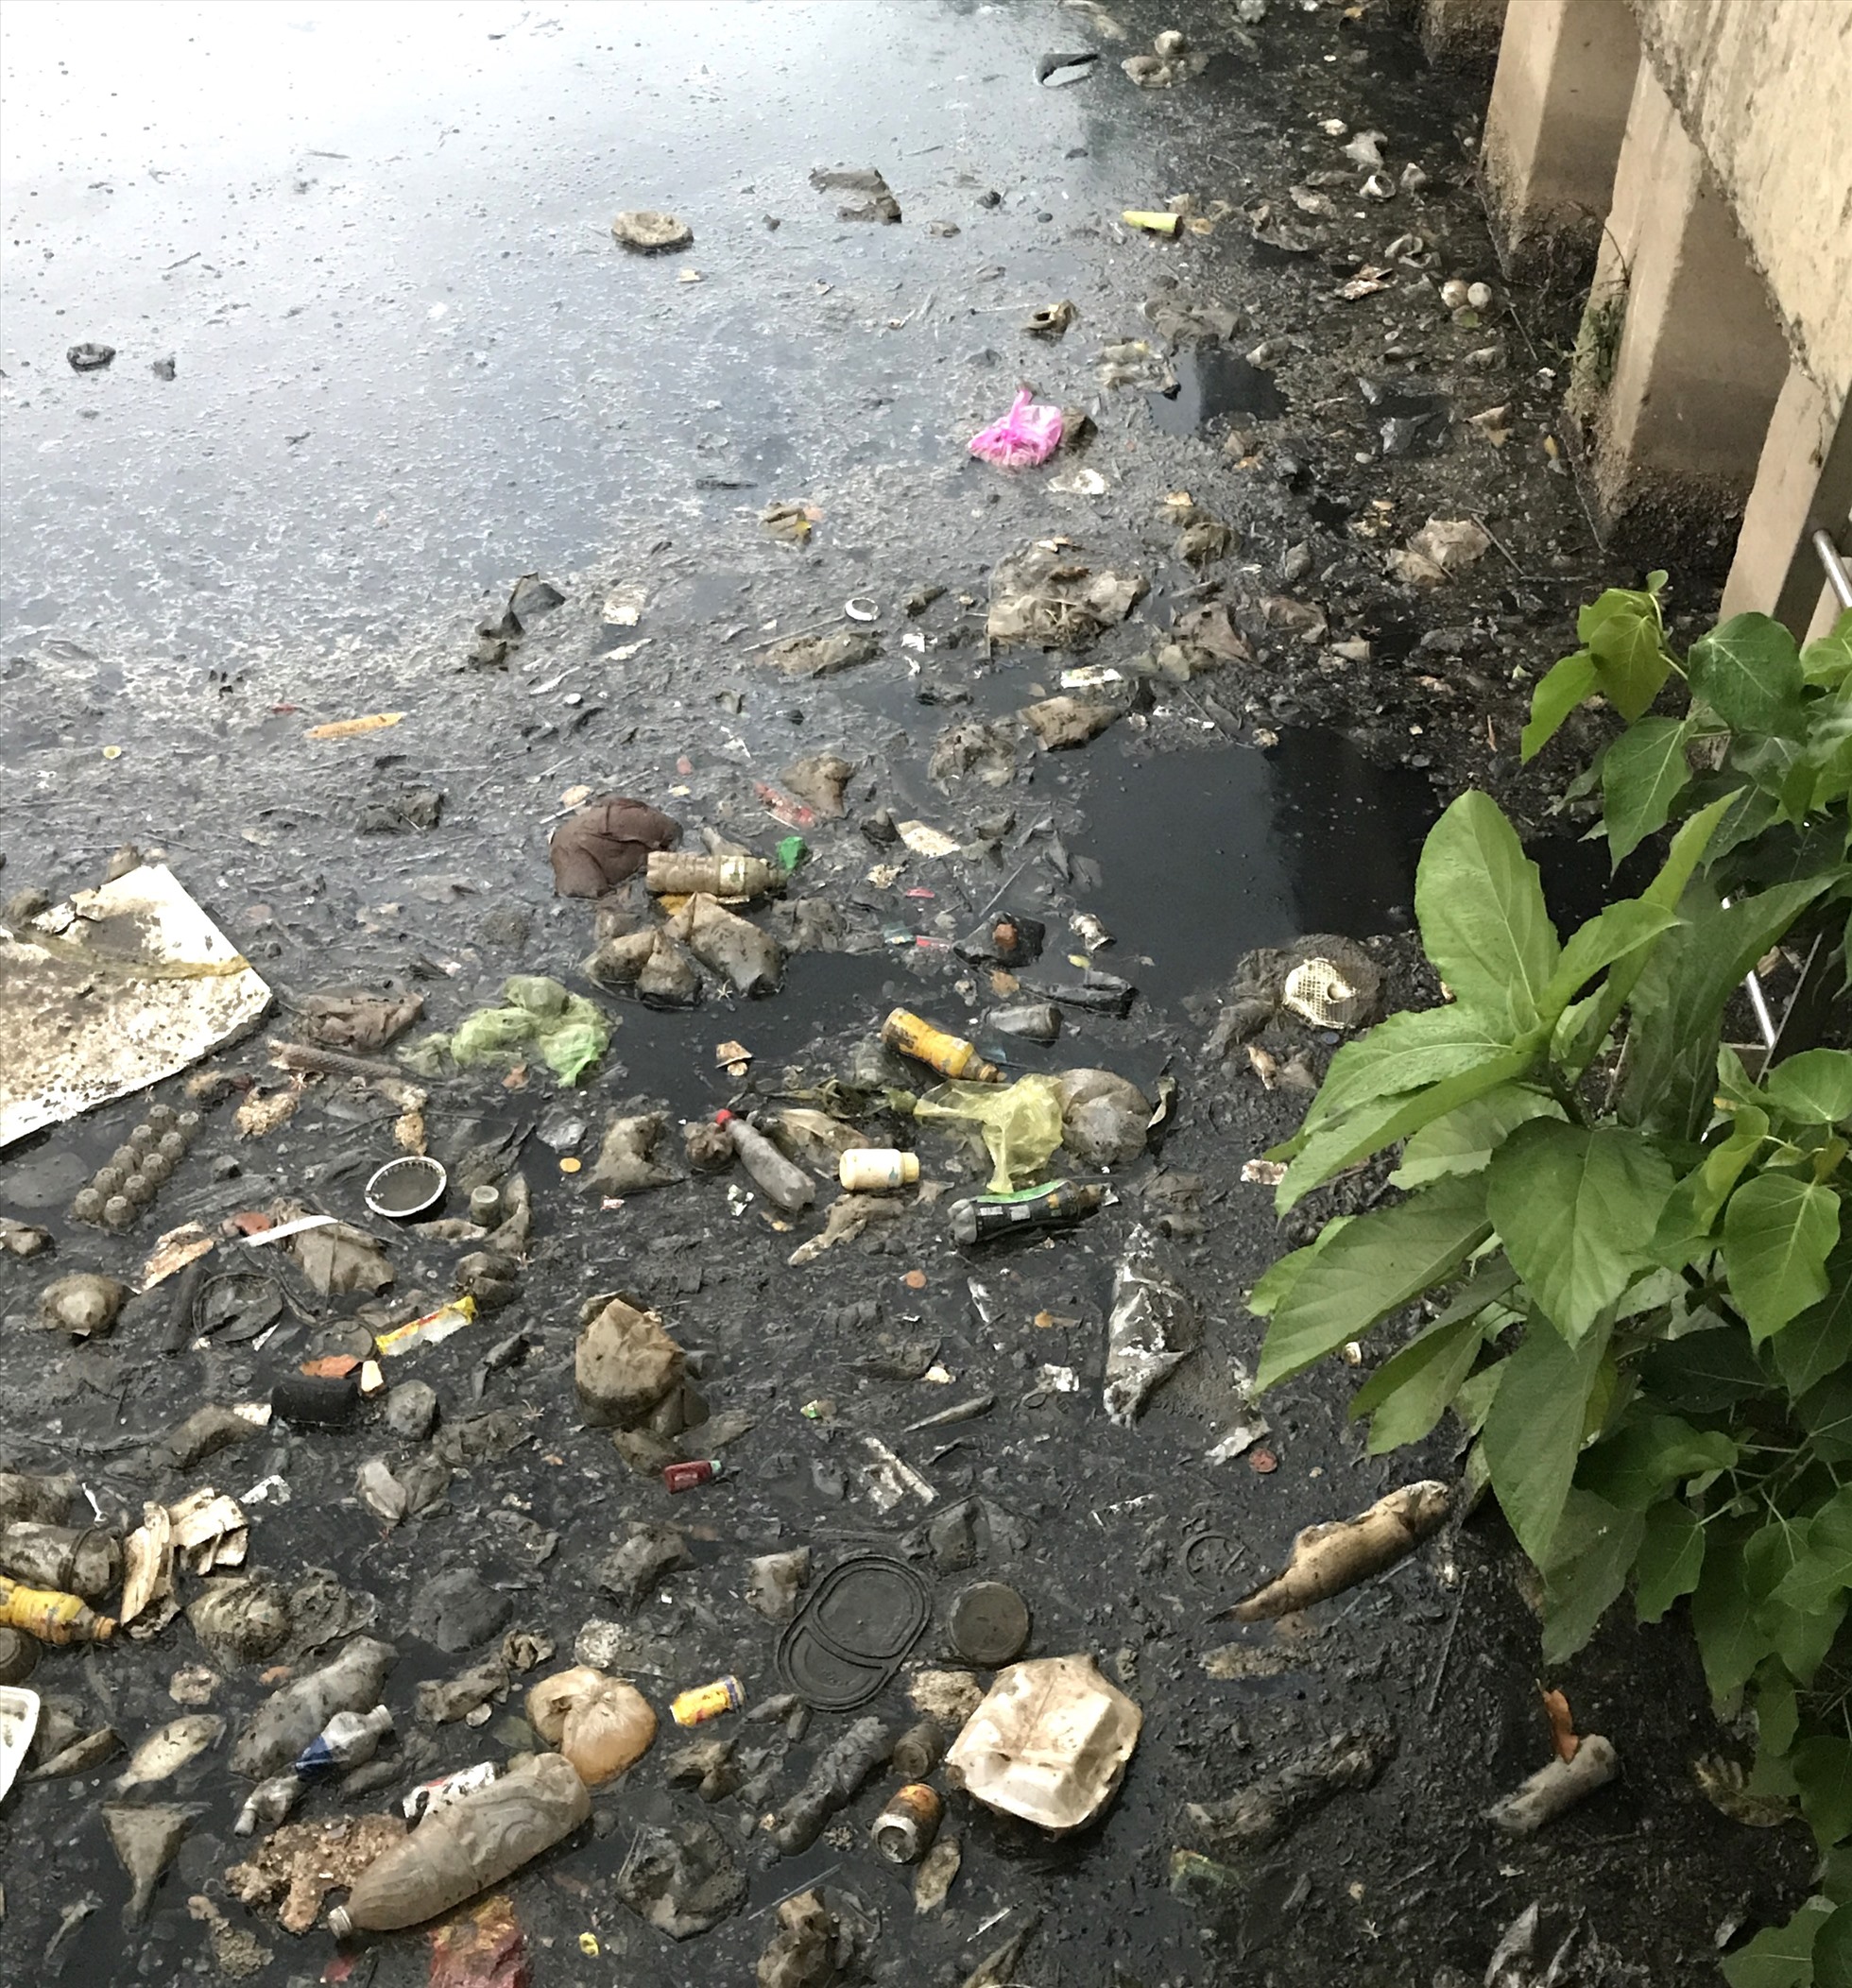 Xác cá và rác nổi lềnh bềnh trên kênh Nhiêu Lộc - Thị Nghè.  Ảnh: Yến Nhi